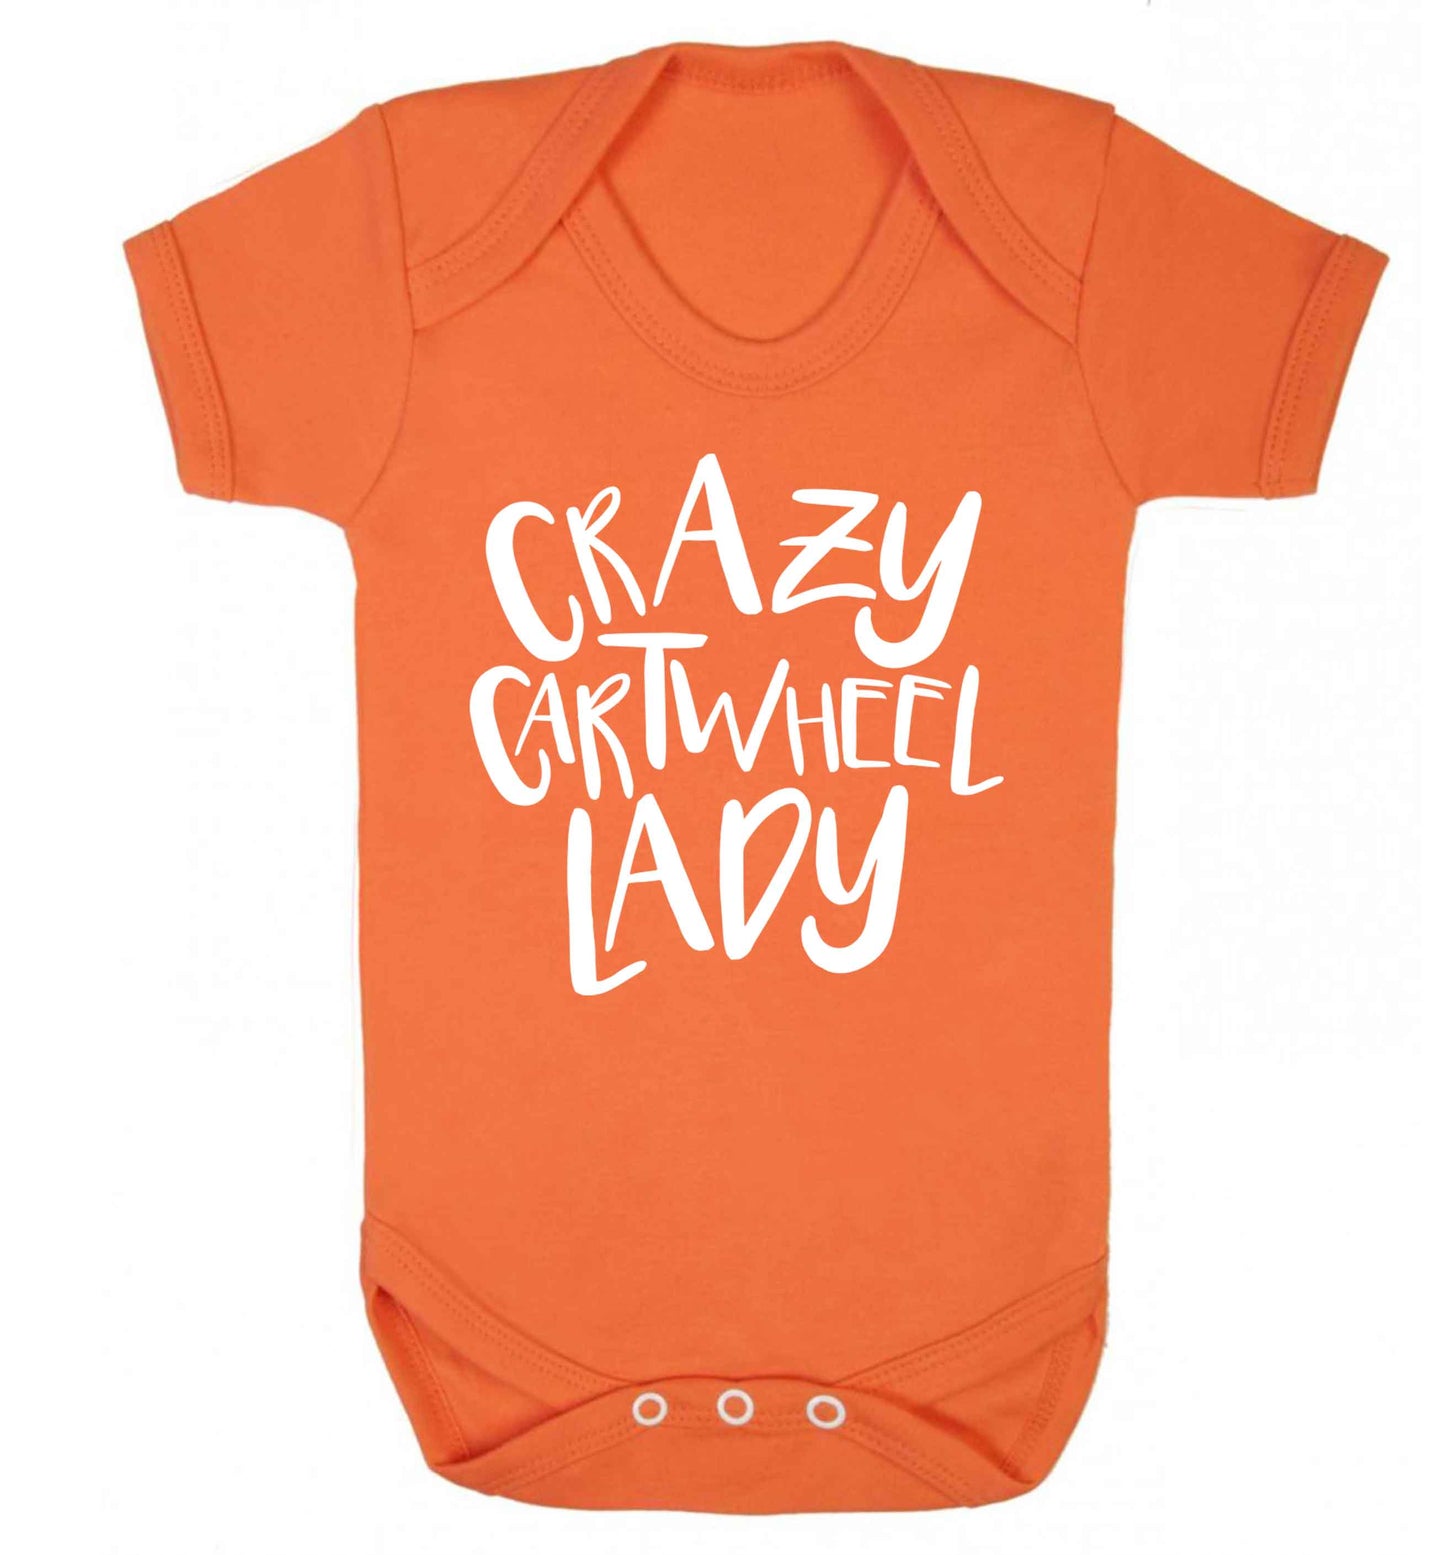 Crazy cartwheel lady Baby Vest orange 18-24 months